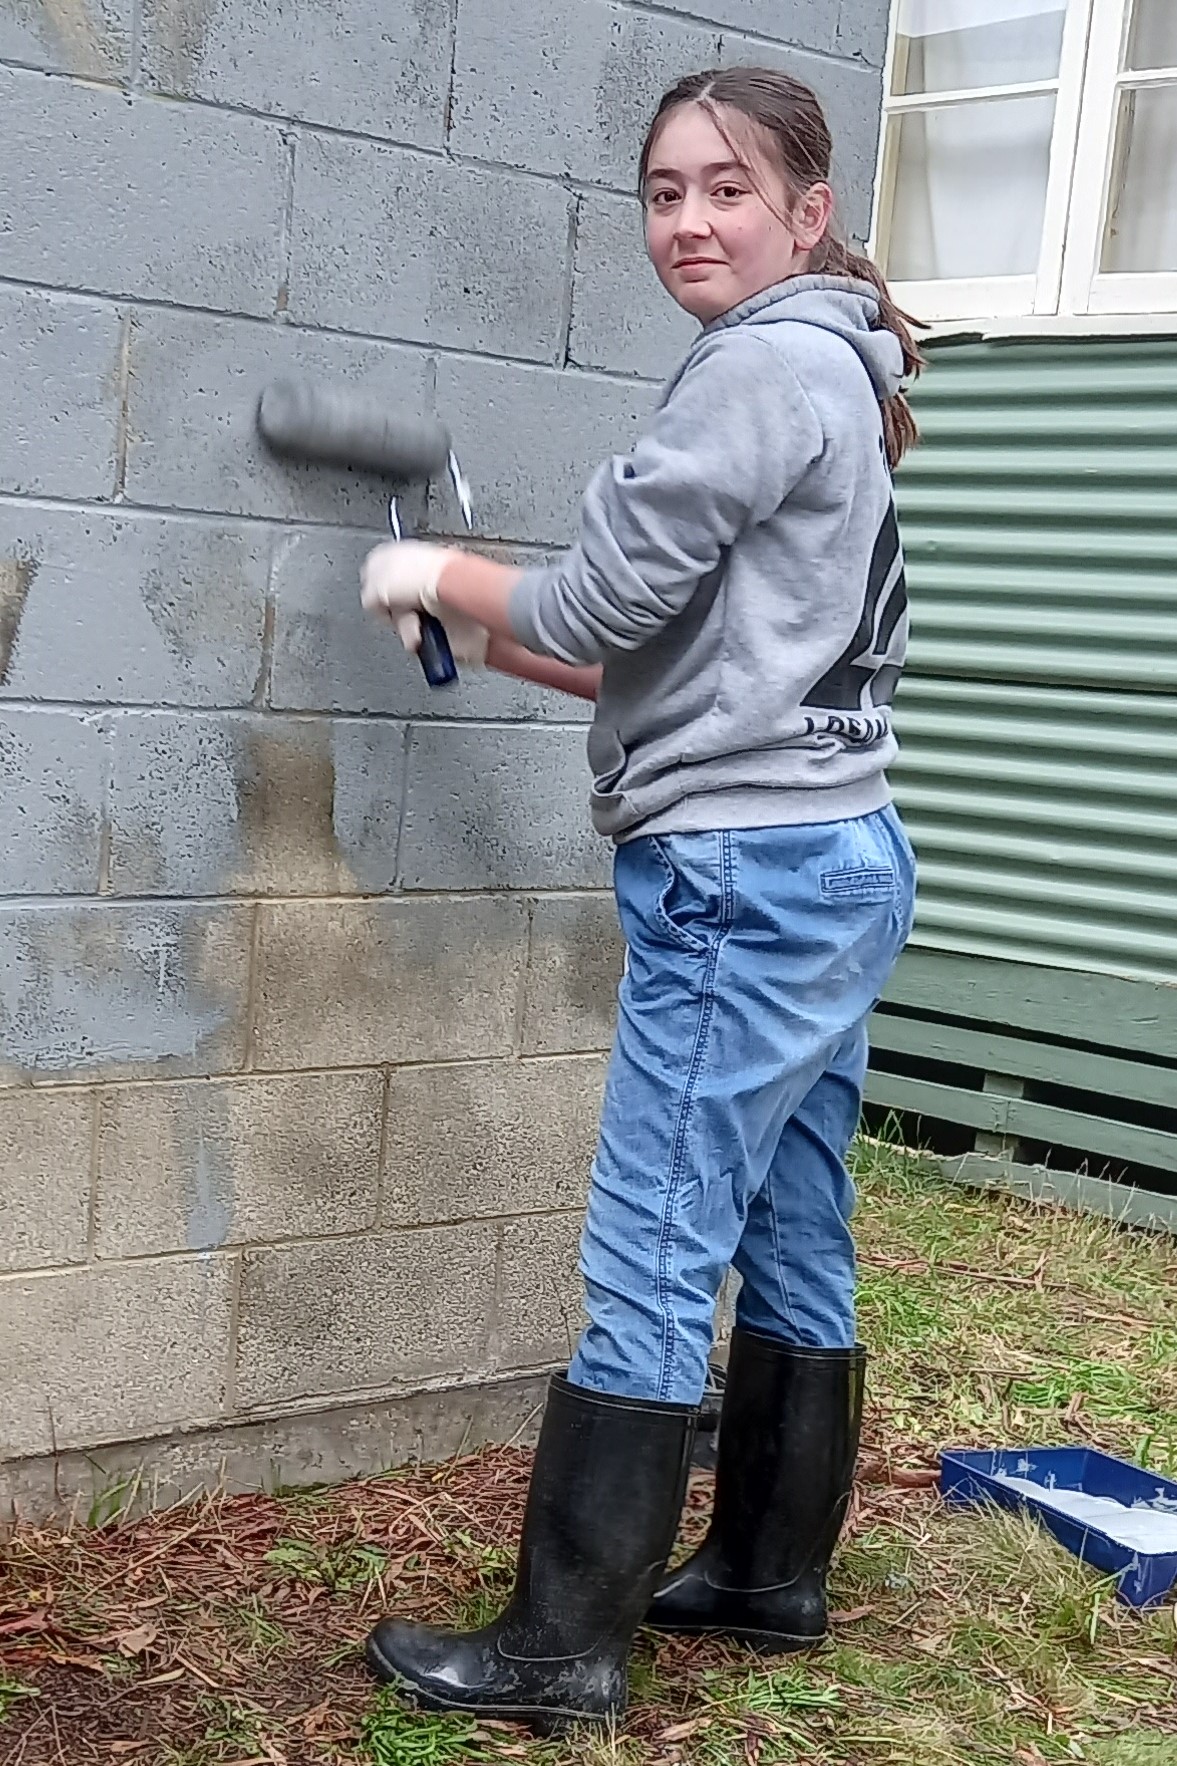 11th Ballarat Guides clean graffiti 2